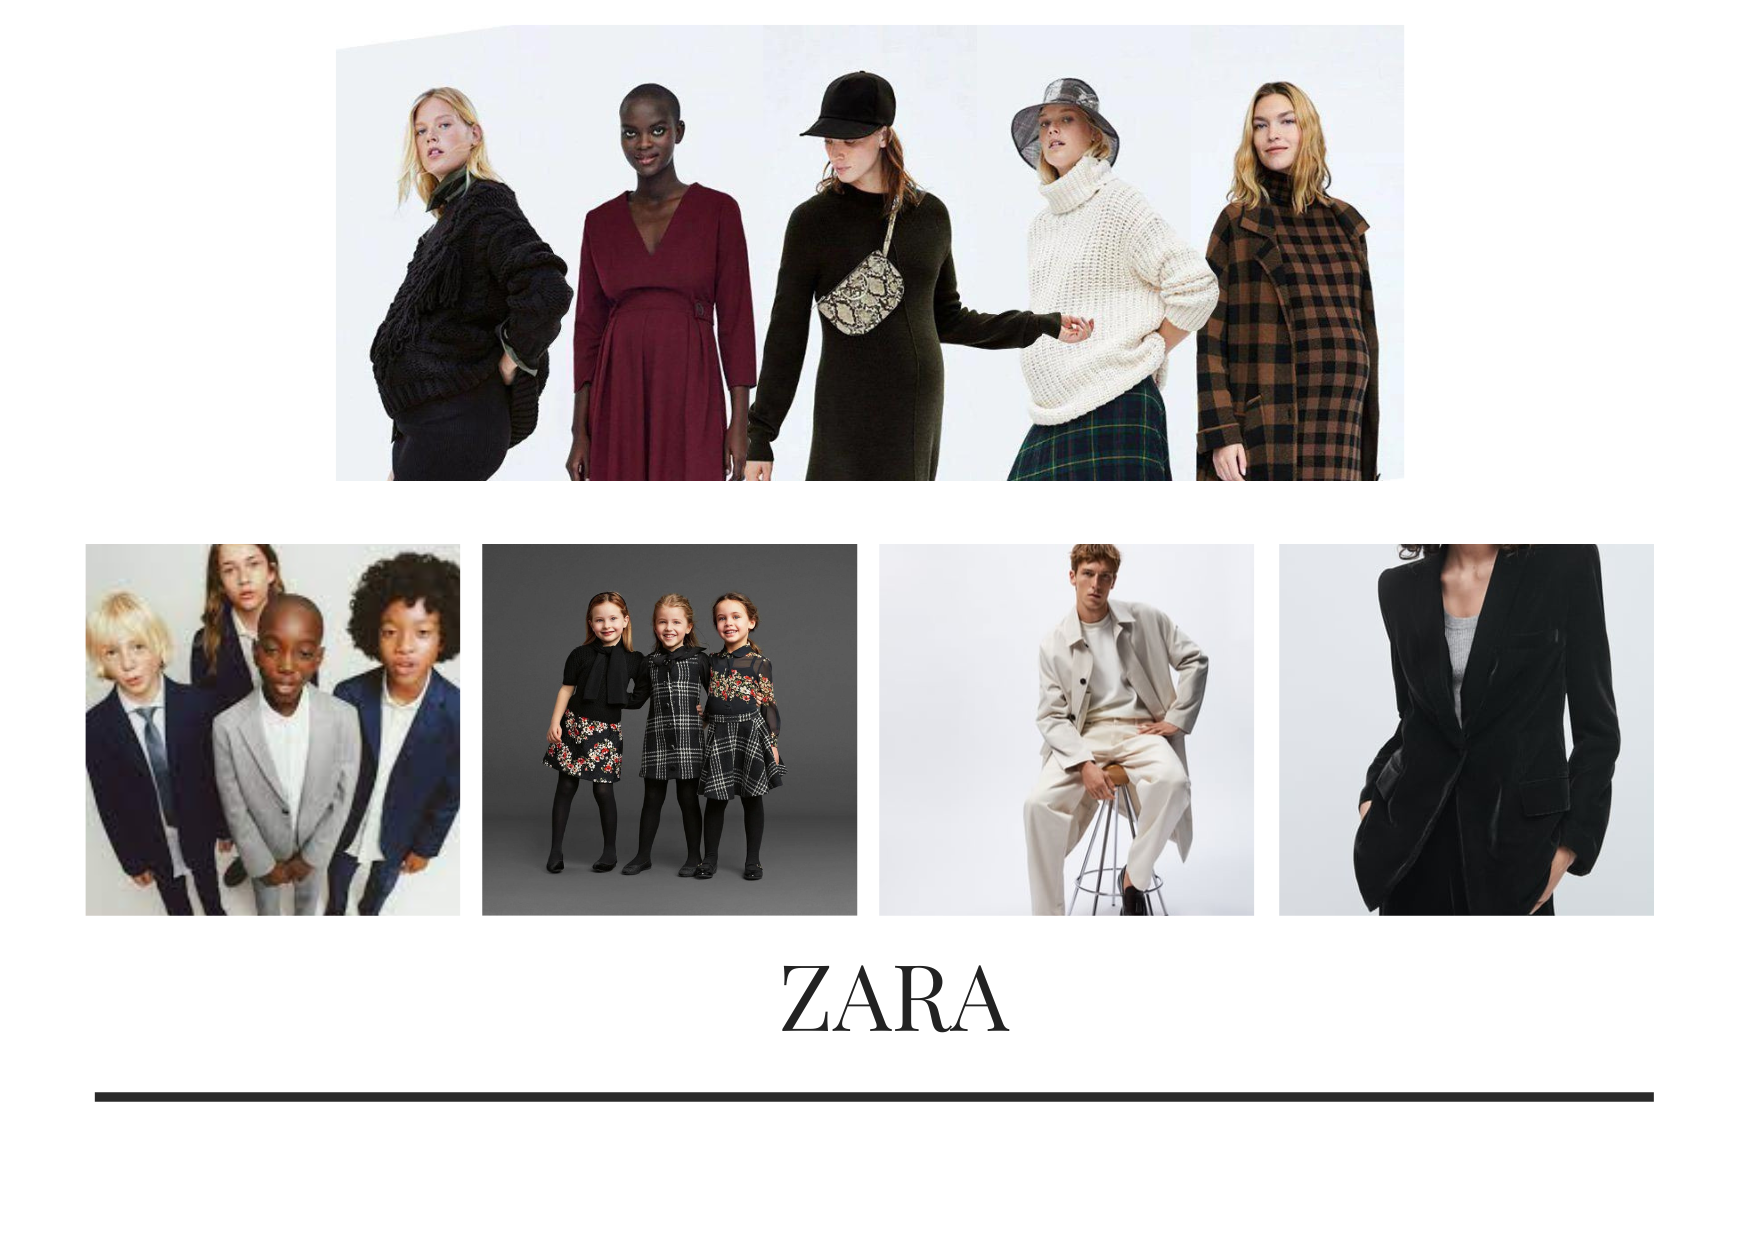 Phong cơ hội năng động phong phú và đa dạng, cao cấp kể từ ngôi nhà kiểu mốt Zara